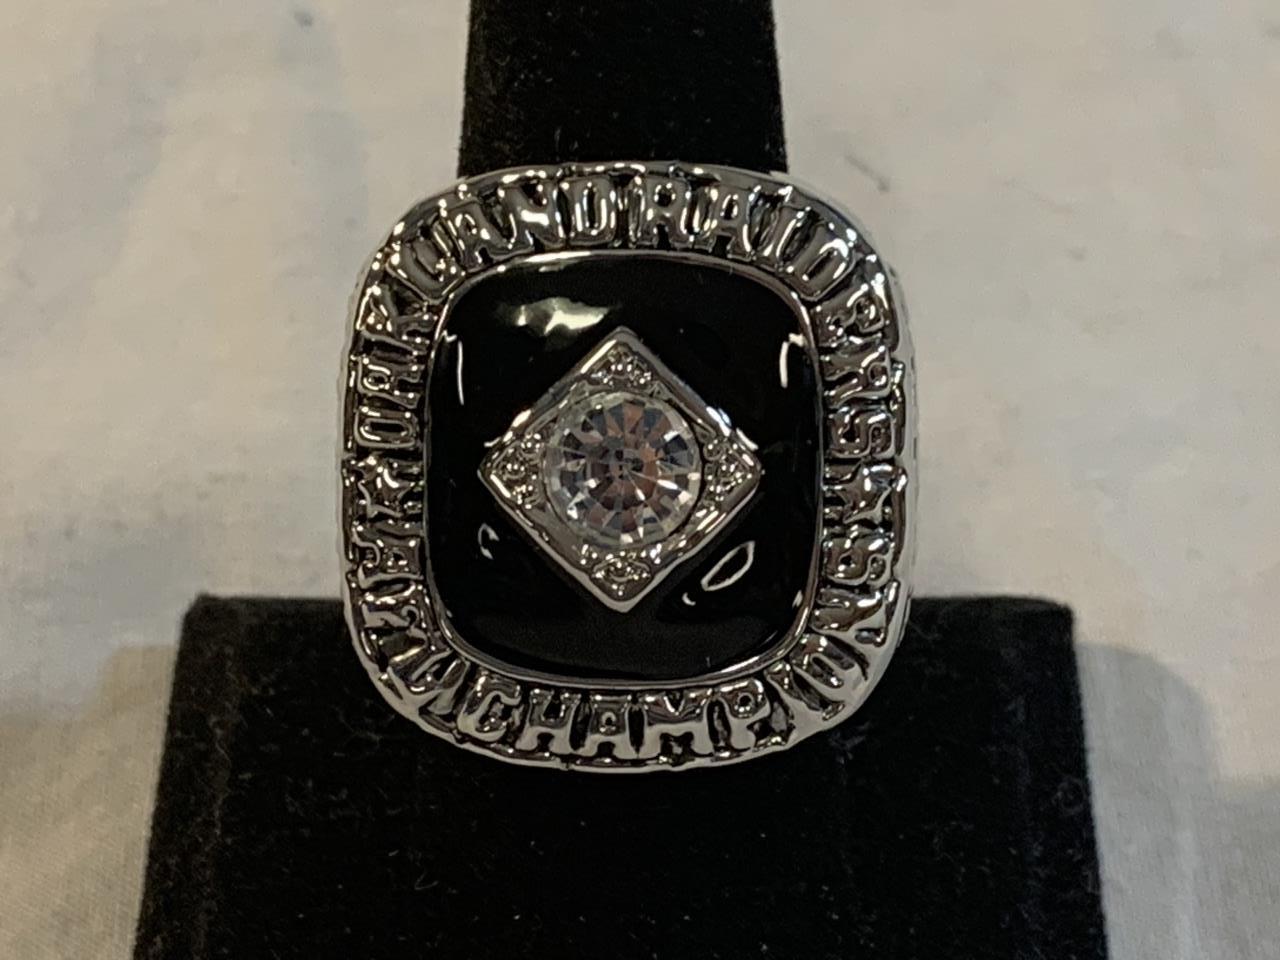 1967 Oakland Raiders Championship Replica Ring